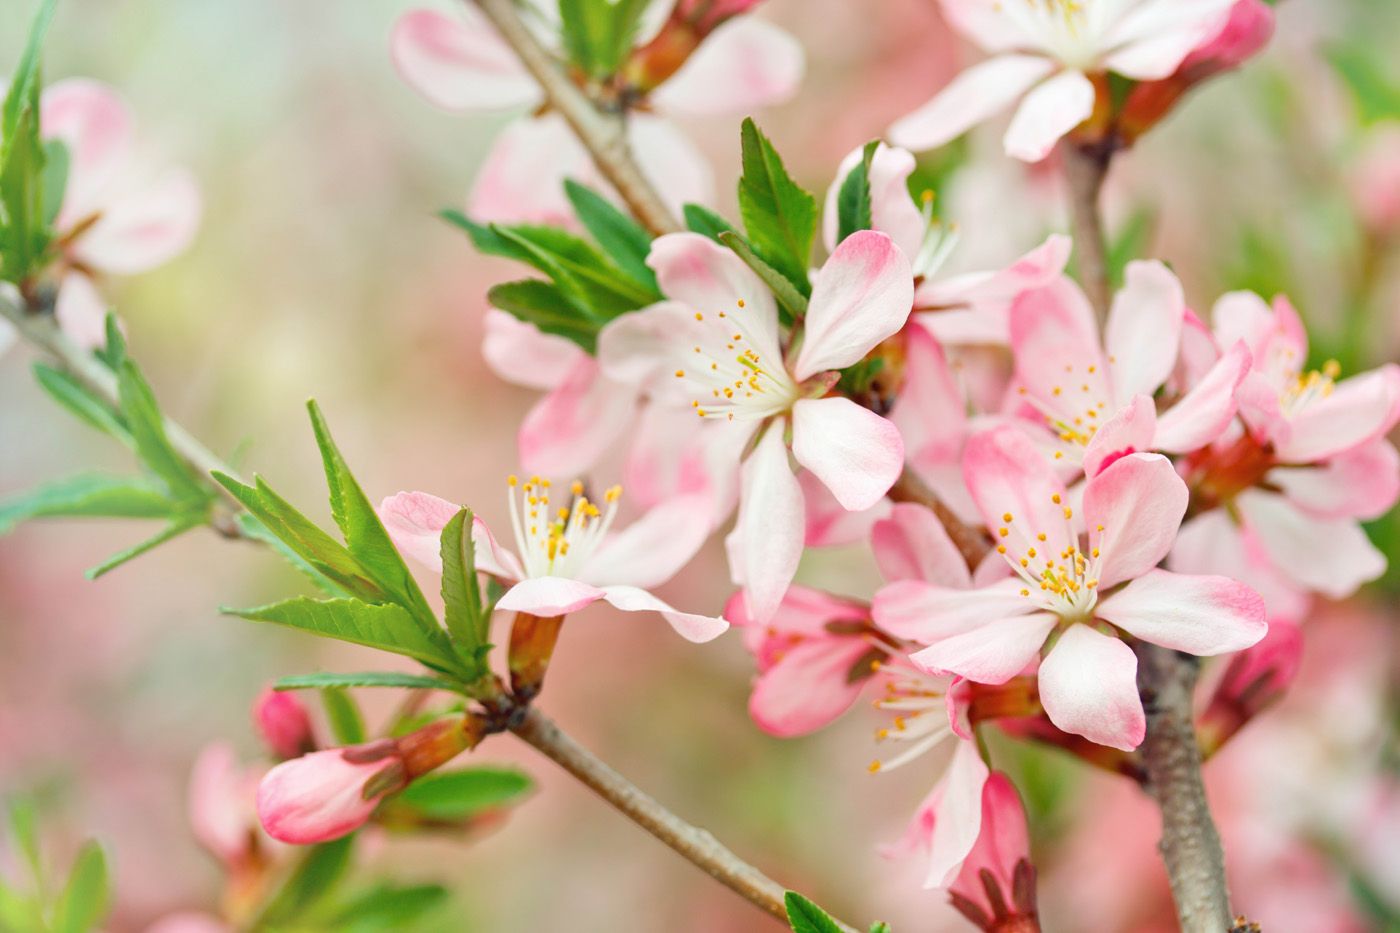 تصویر منحصر به فرد و زیبا از شکوفه های صورتی و سفید از درخت هلو 